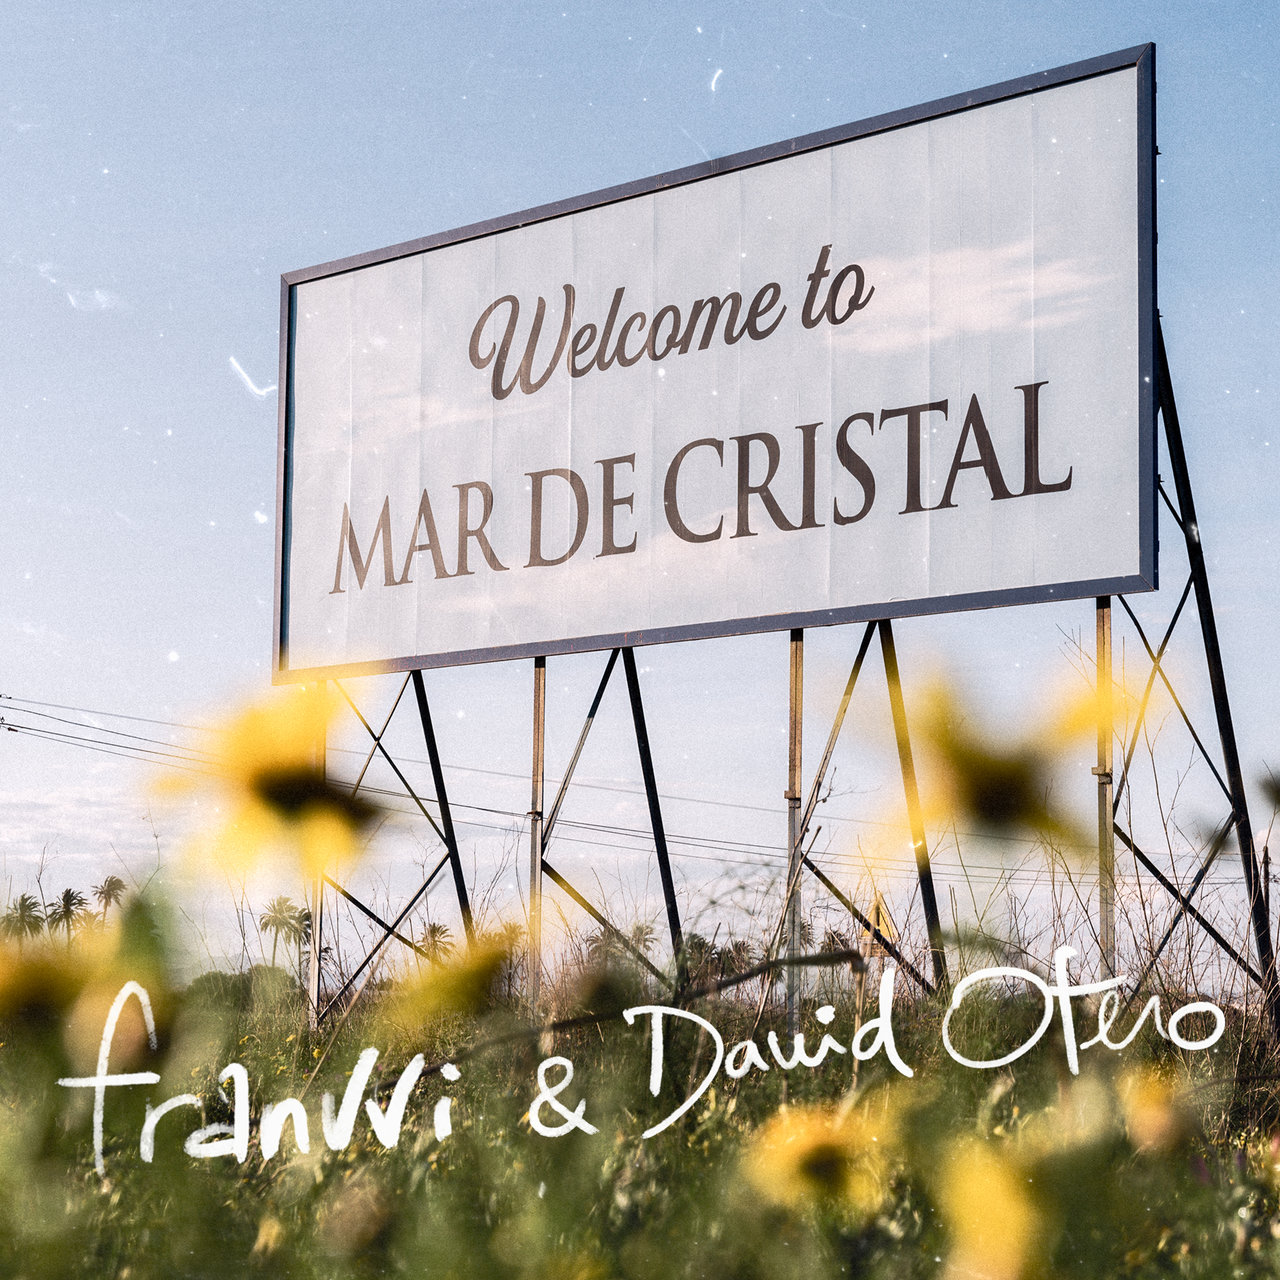 franvvi & David Otero Mar de Cristal cover artwork